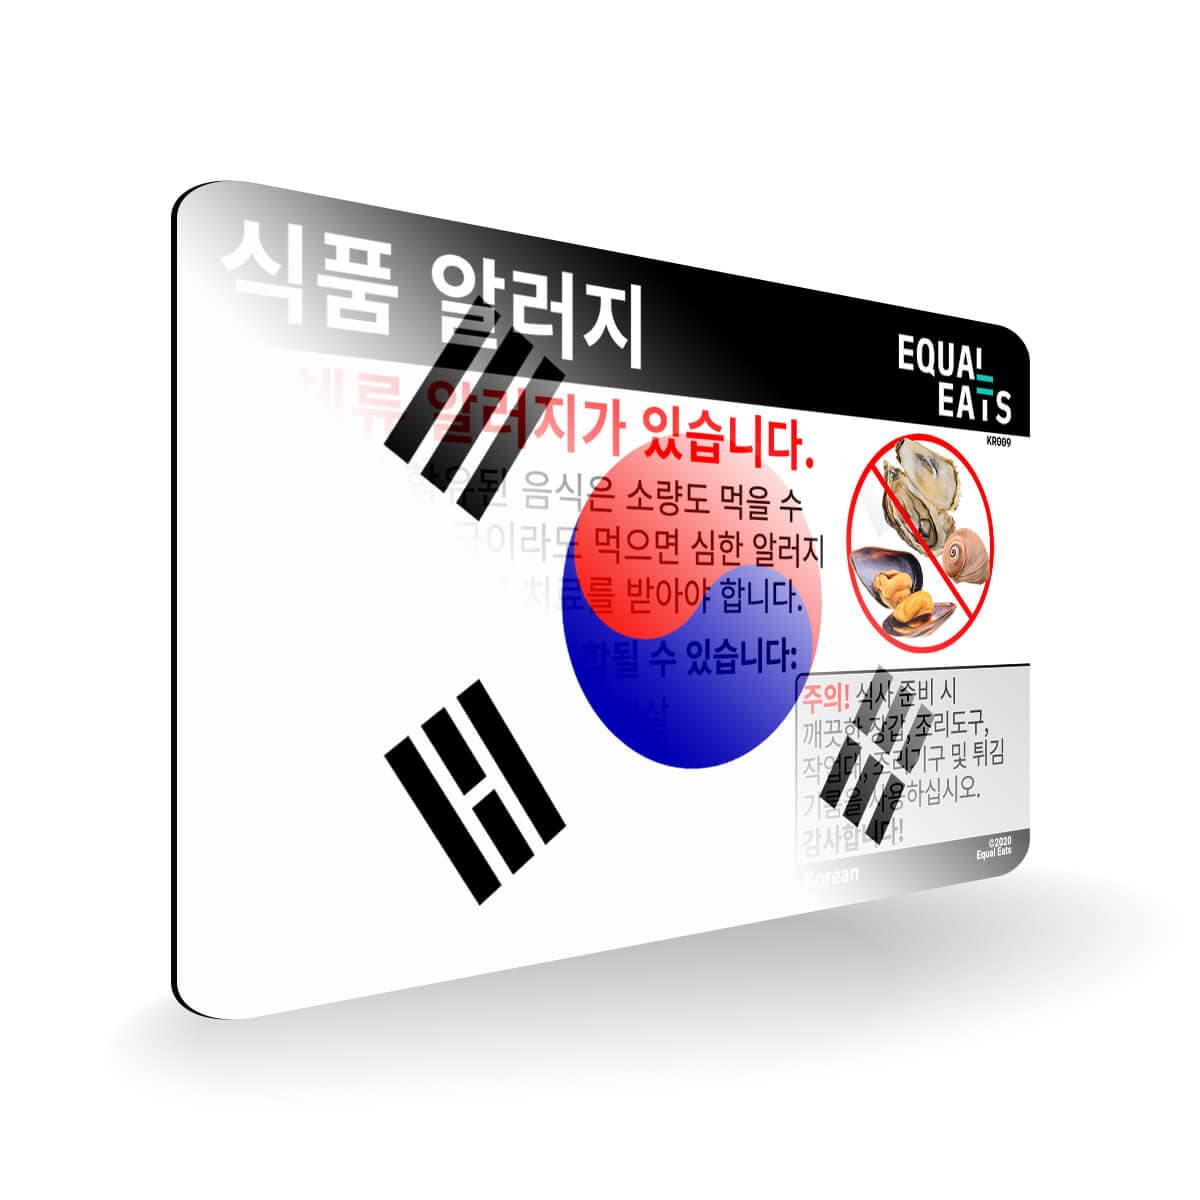 Mollusk Allergy in Korean. Mollusk Allergy Card for Korea